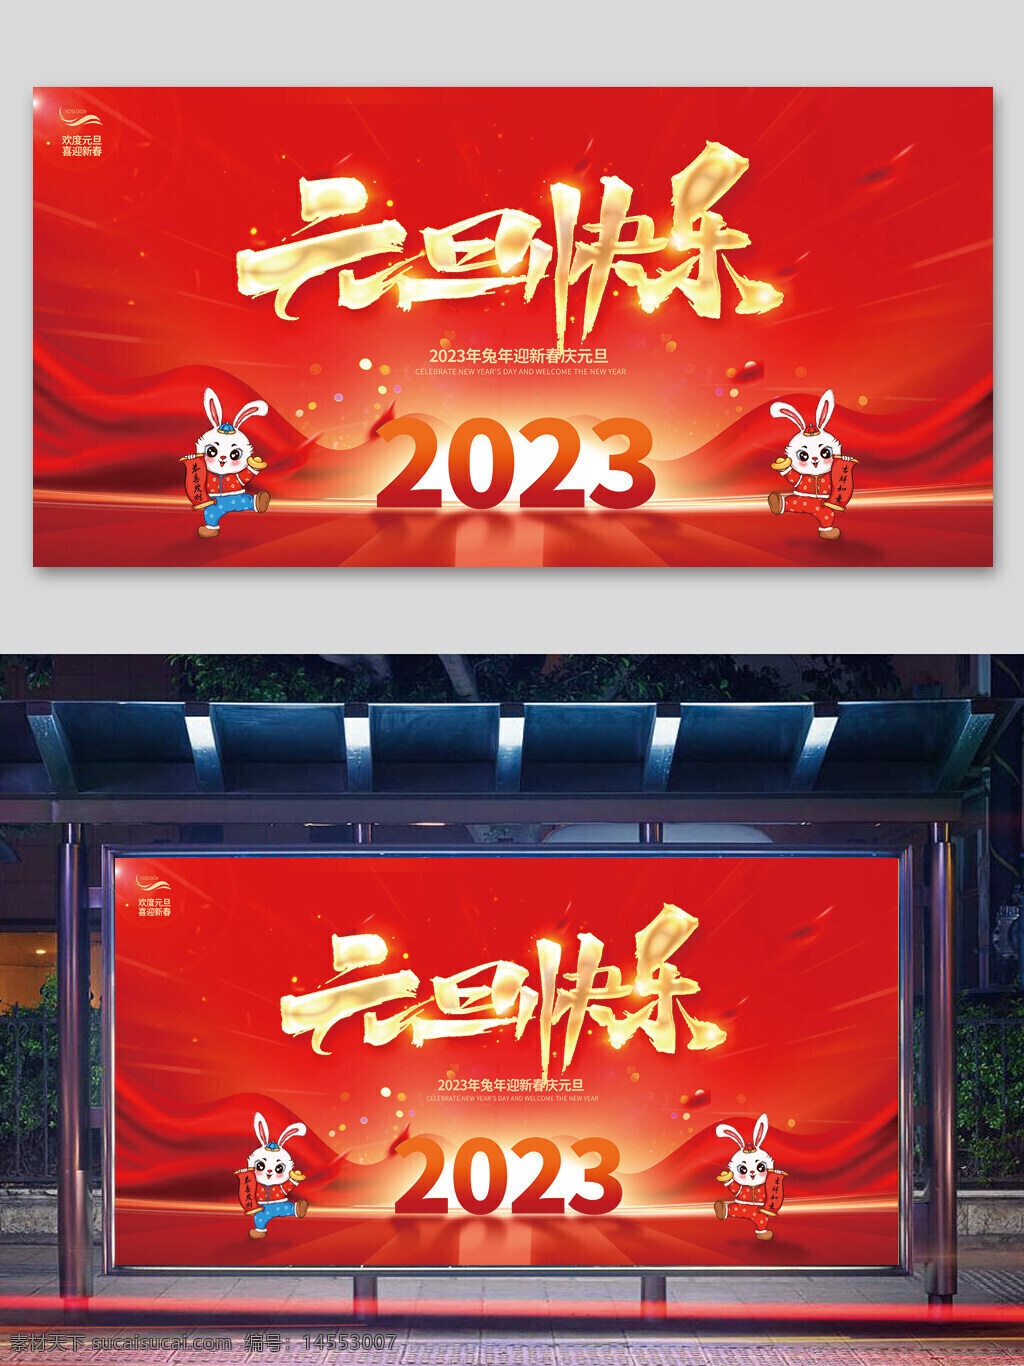 兔年 2023兔年 兔年春节 2023兔年大吉 2023年 2023海报 卡通兔 兔年大吉 兔年吉祥 兔年海报 兔年快乐 兔年素材 兔年贺卡 新年